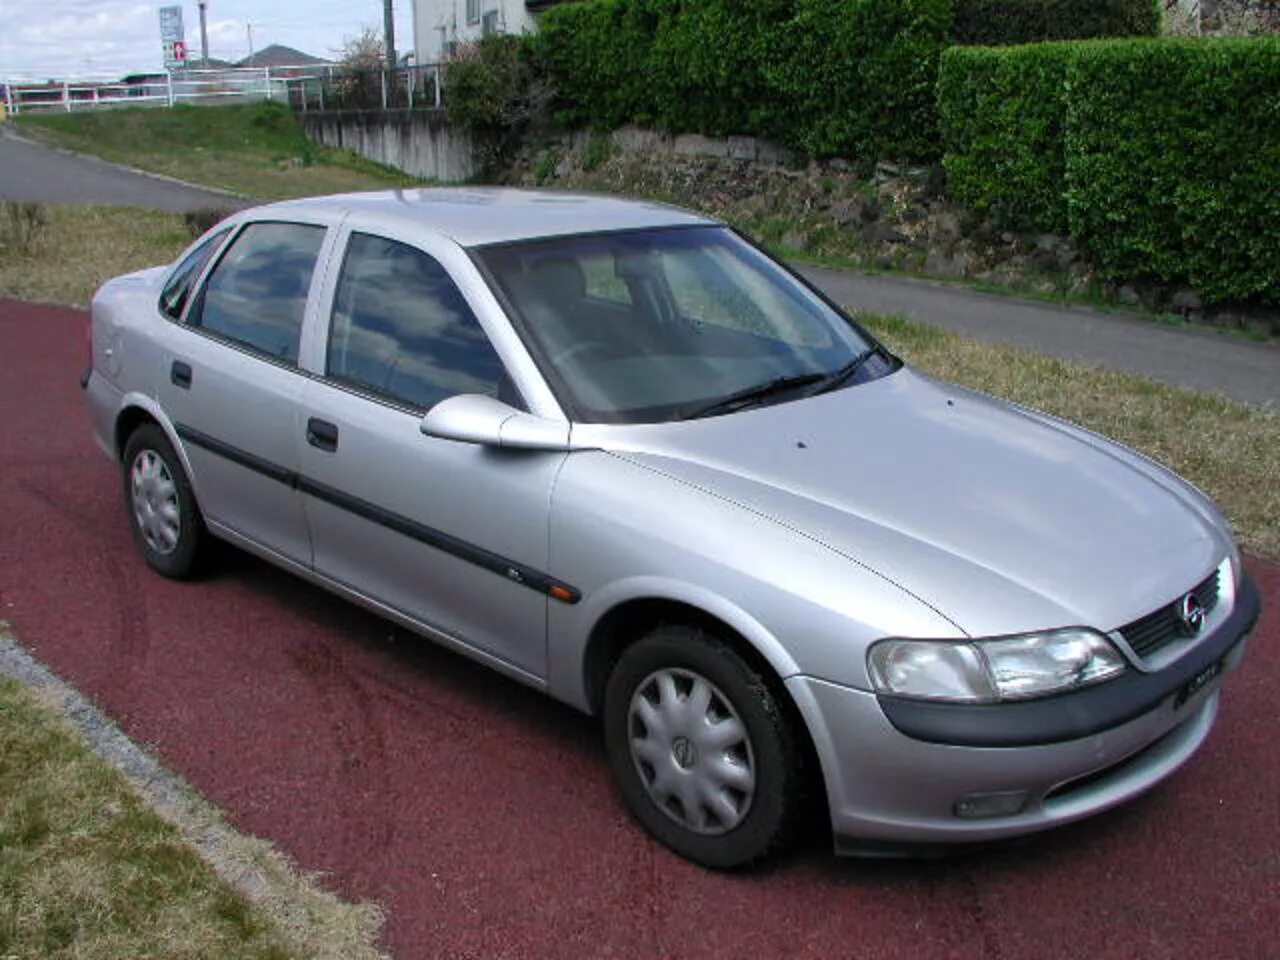 Opel Vectra 1997. Опель Вектра 1997. Опель Вектра 1997 седан. Опель Вектра 1997 года.